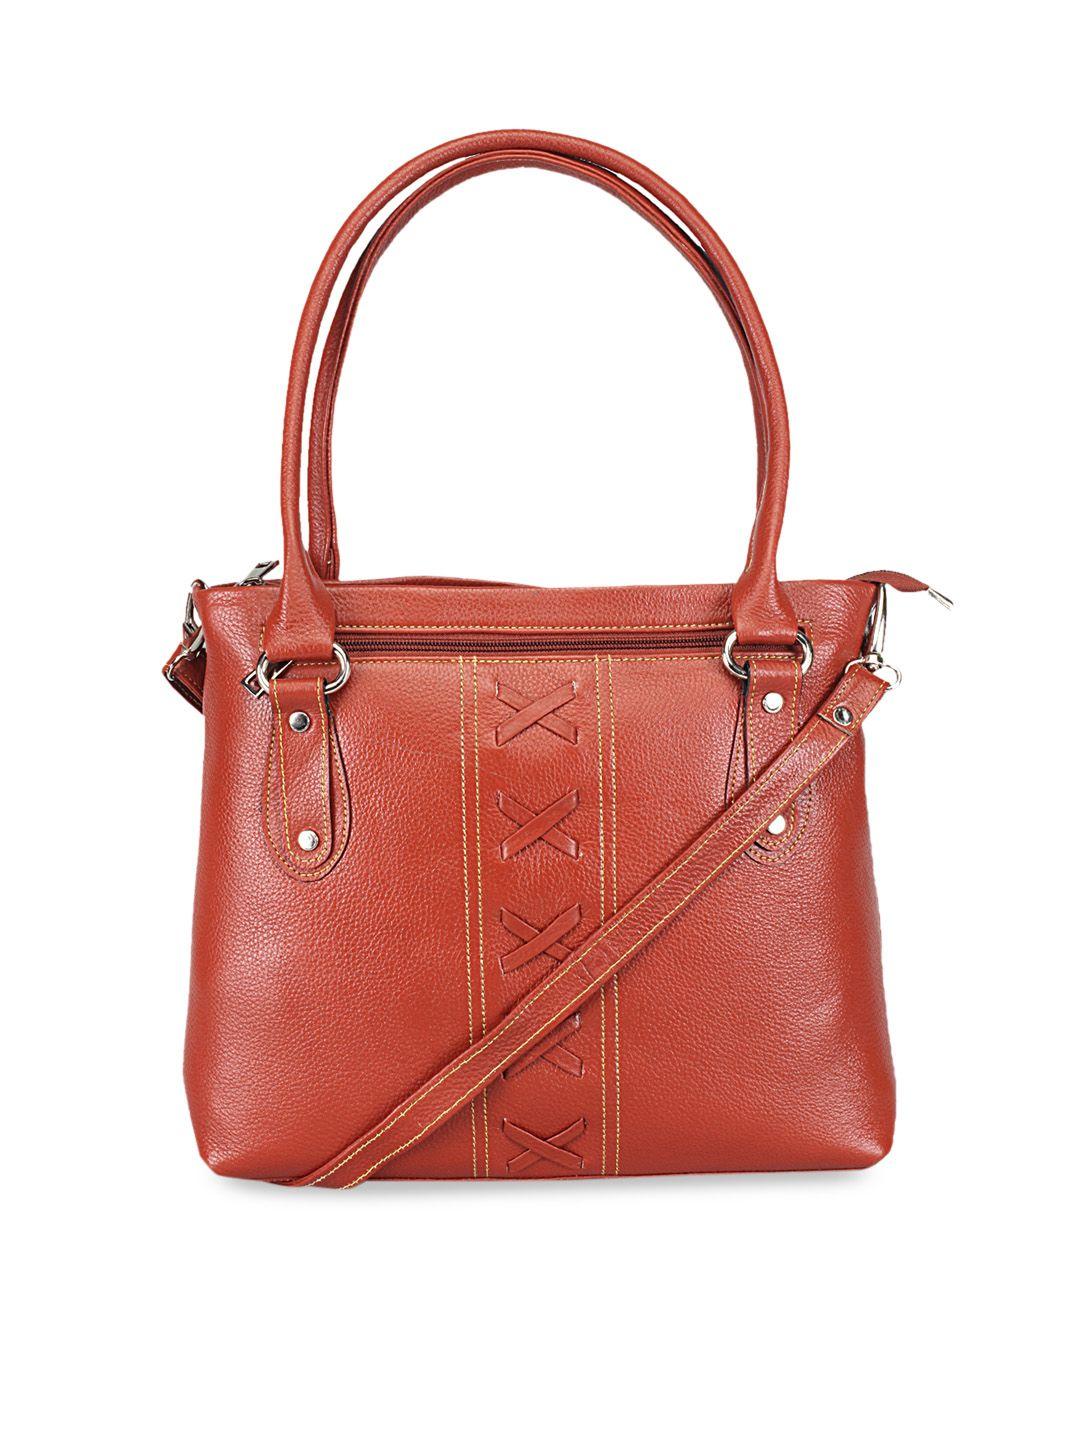 genwayne brown solid leather handheld bag